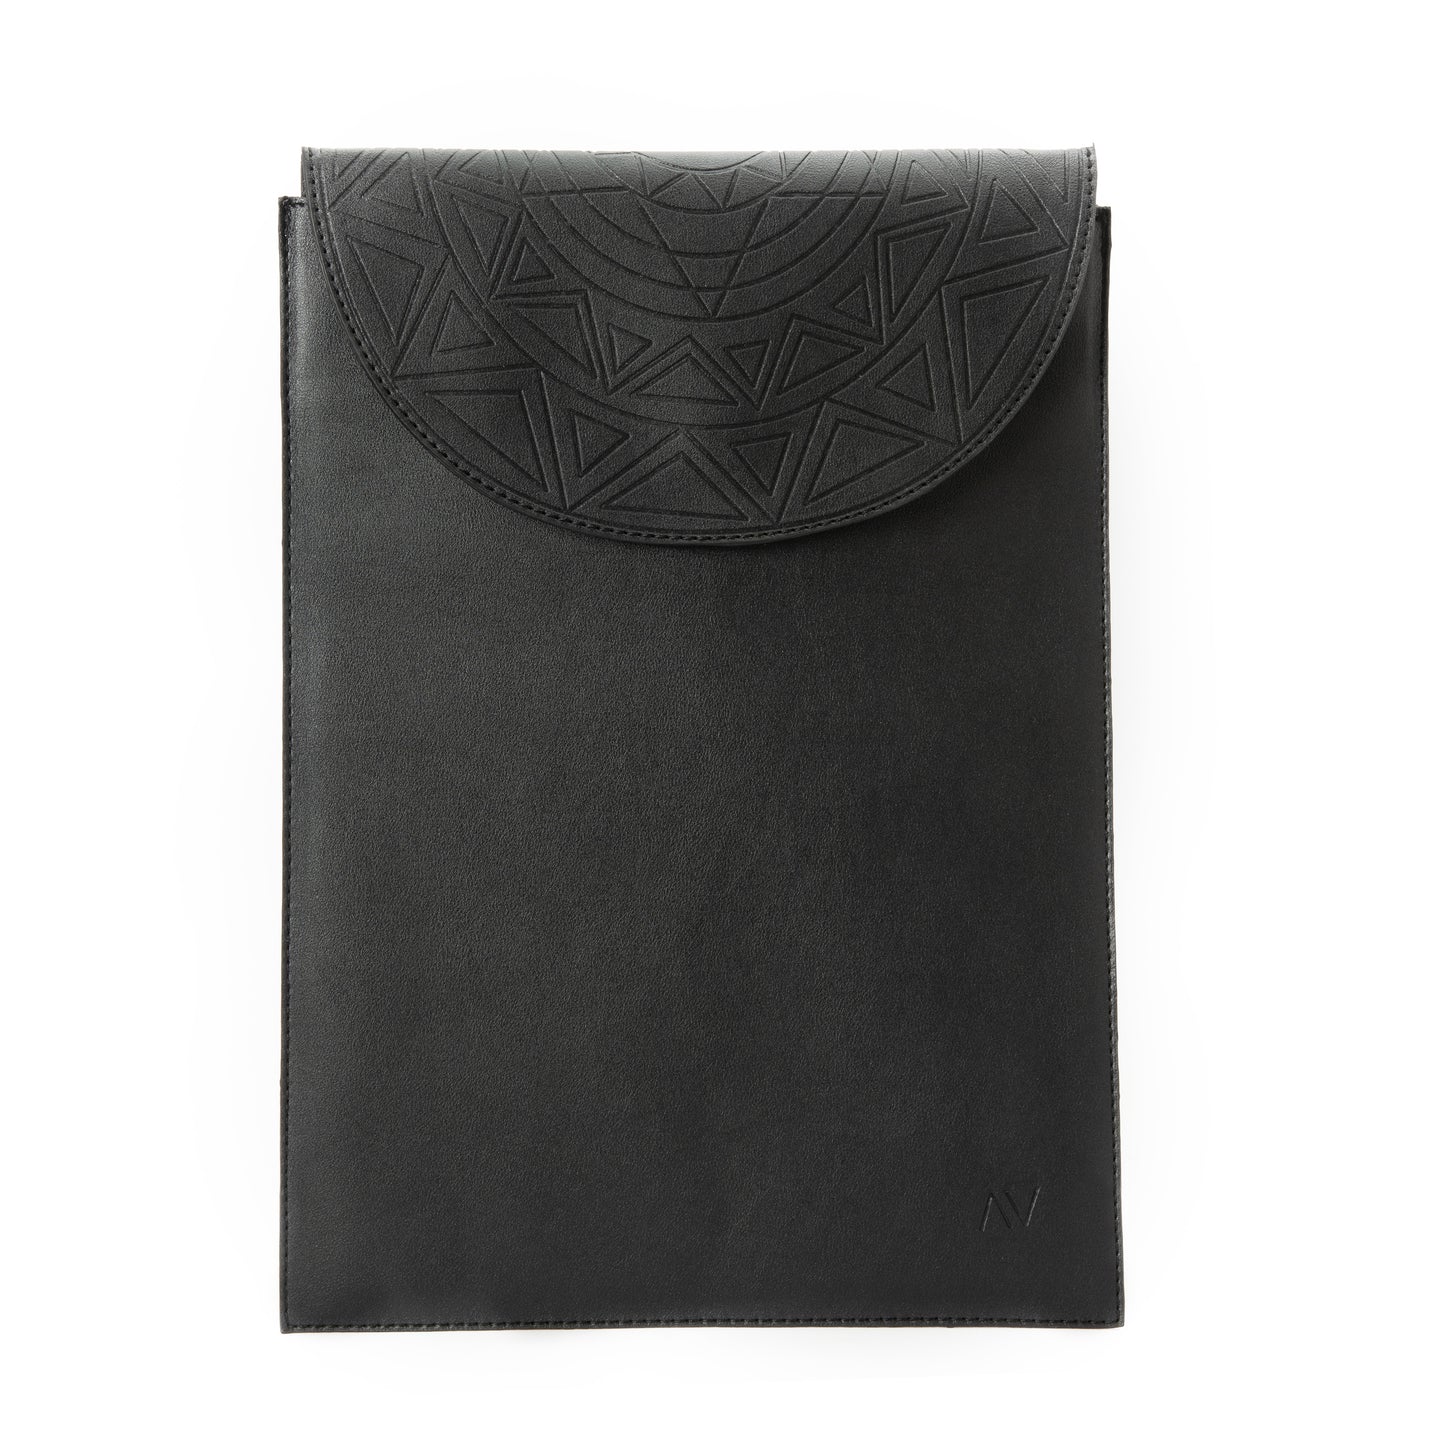 Black engraving Laptop sleeve 15' - Code 417